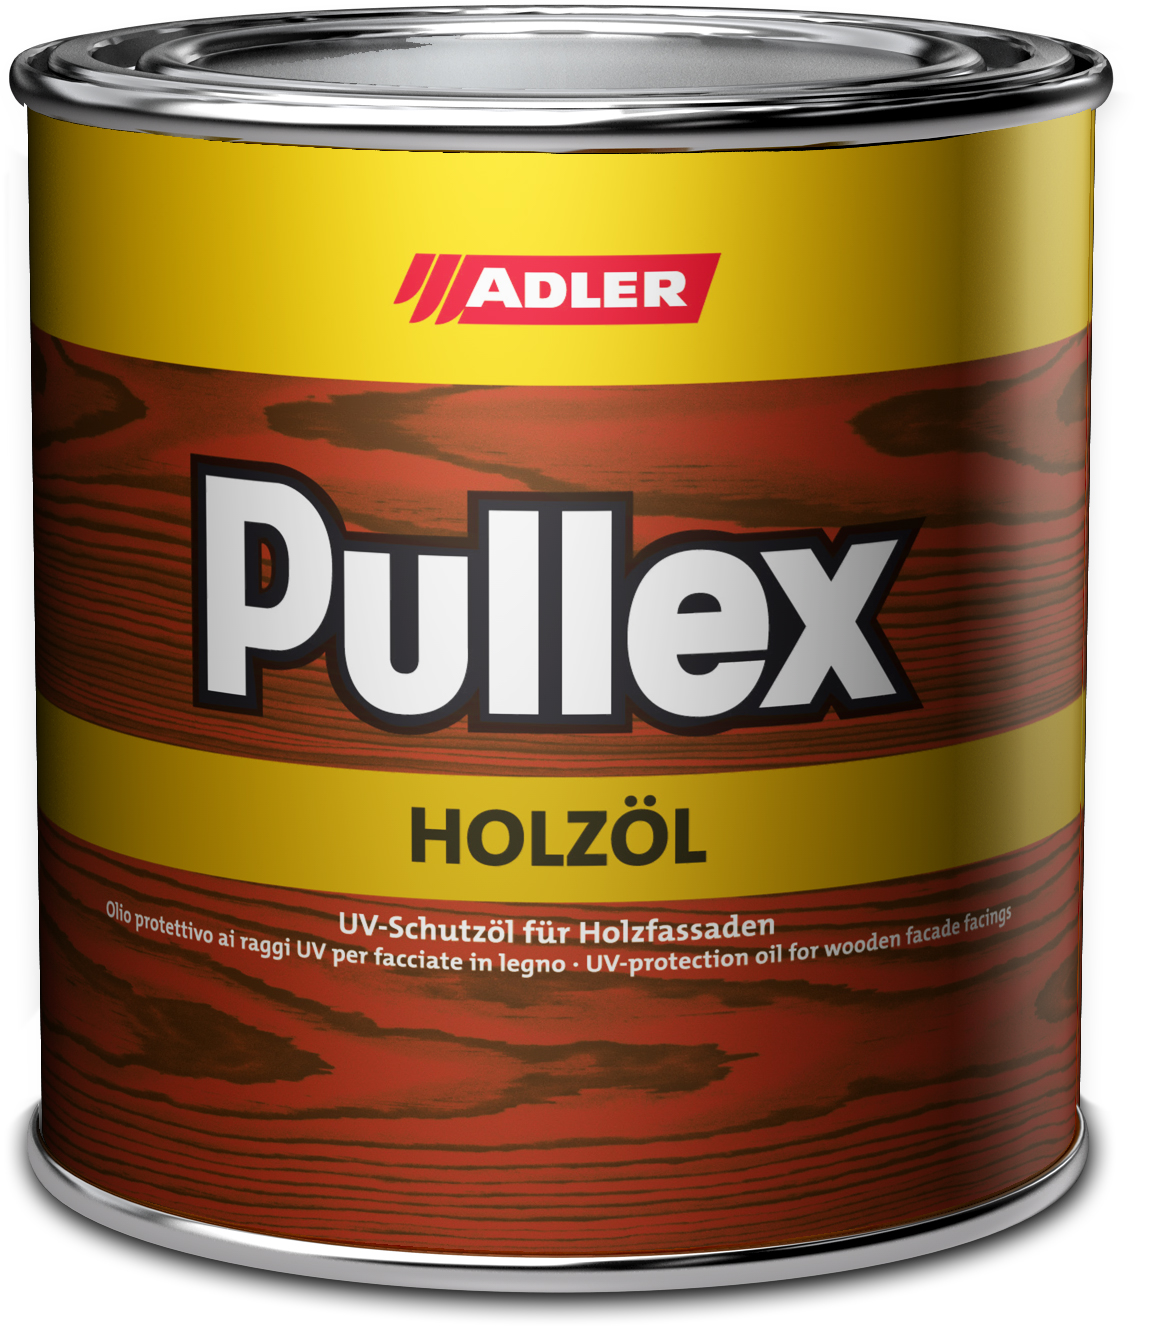 ADLER PULLEX HOLZÖL - UV ochranný olej na drevodomy a drevené obloženie ST 05/5 - puma 10 L